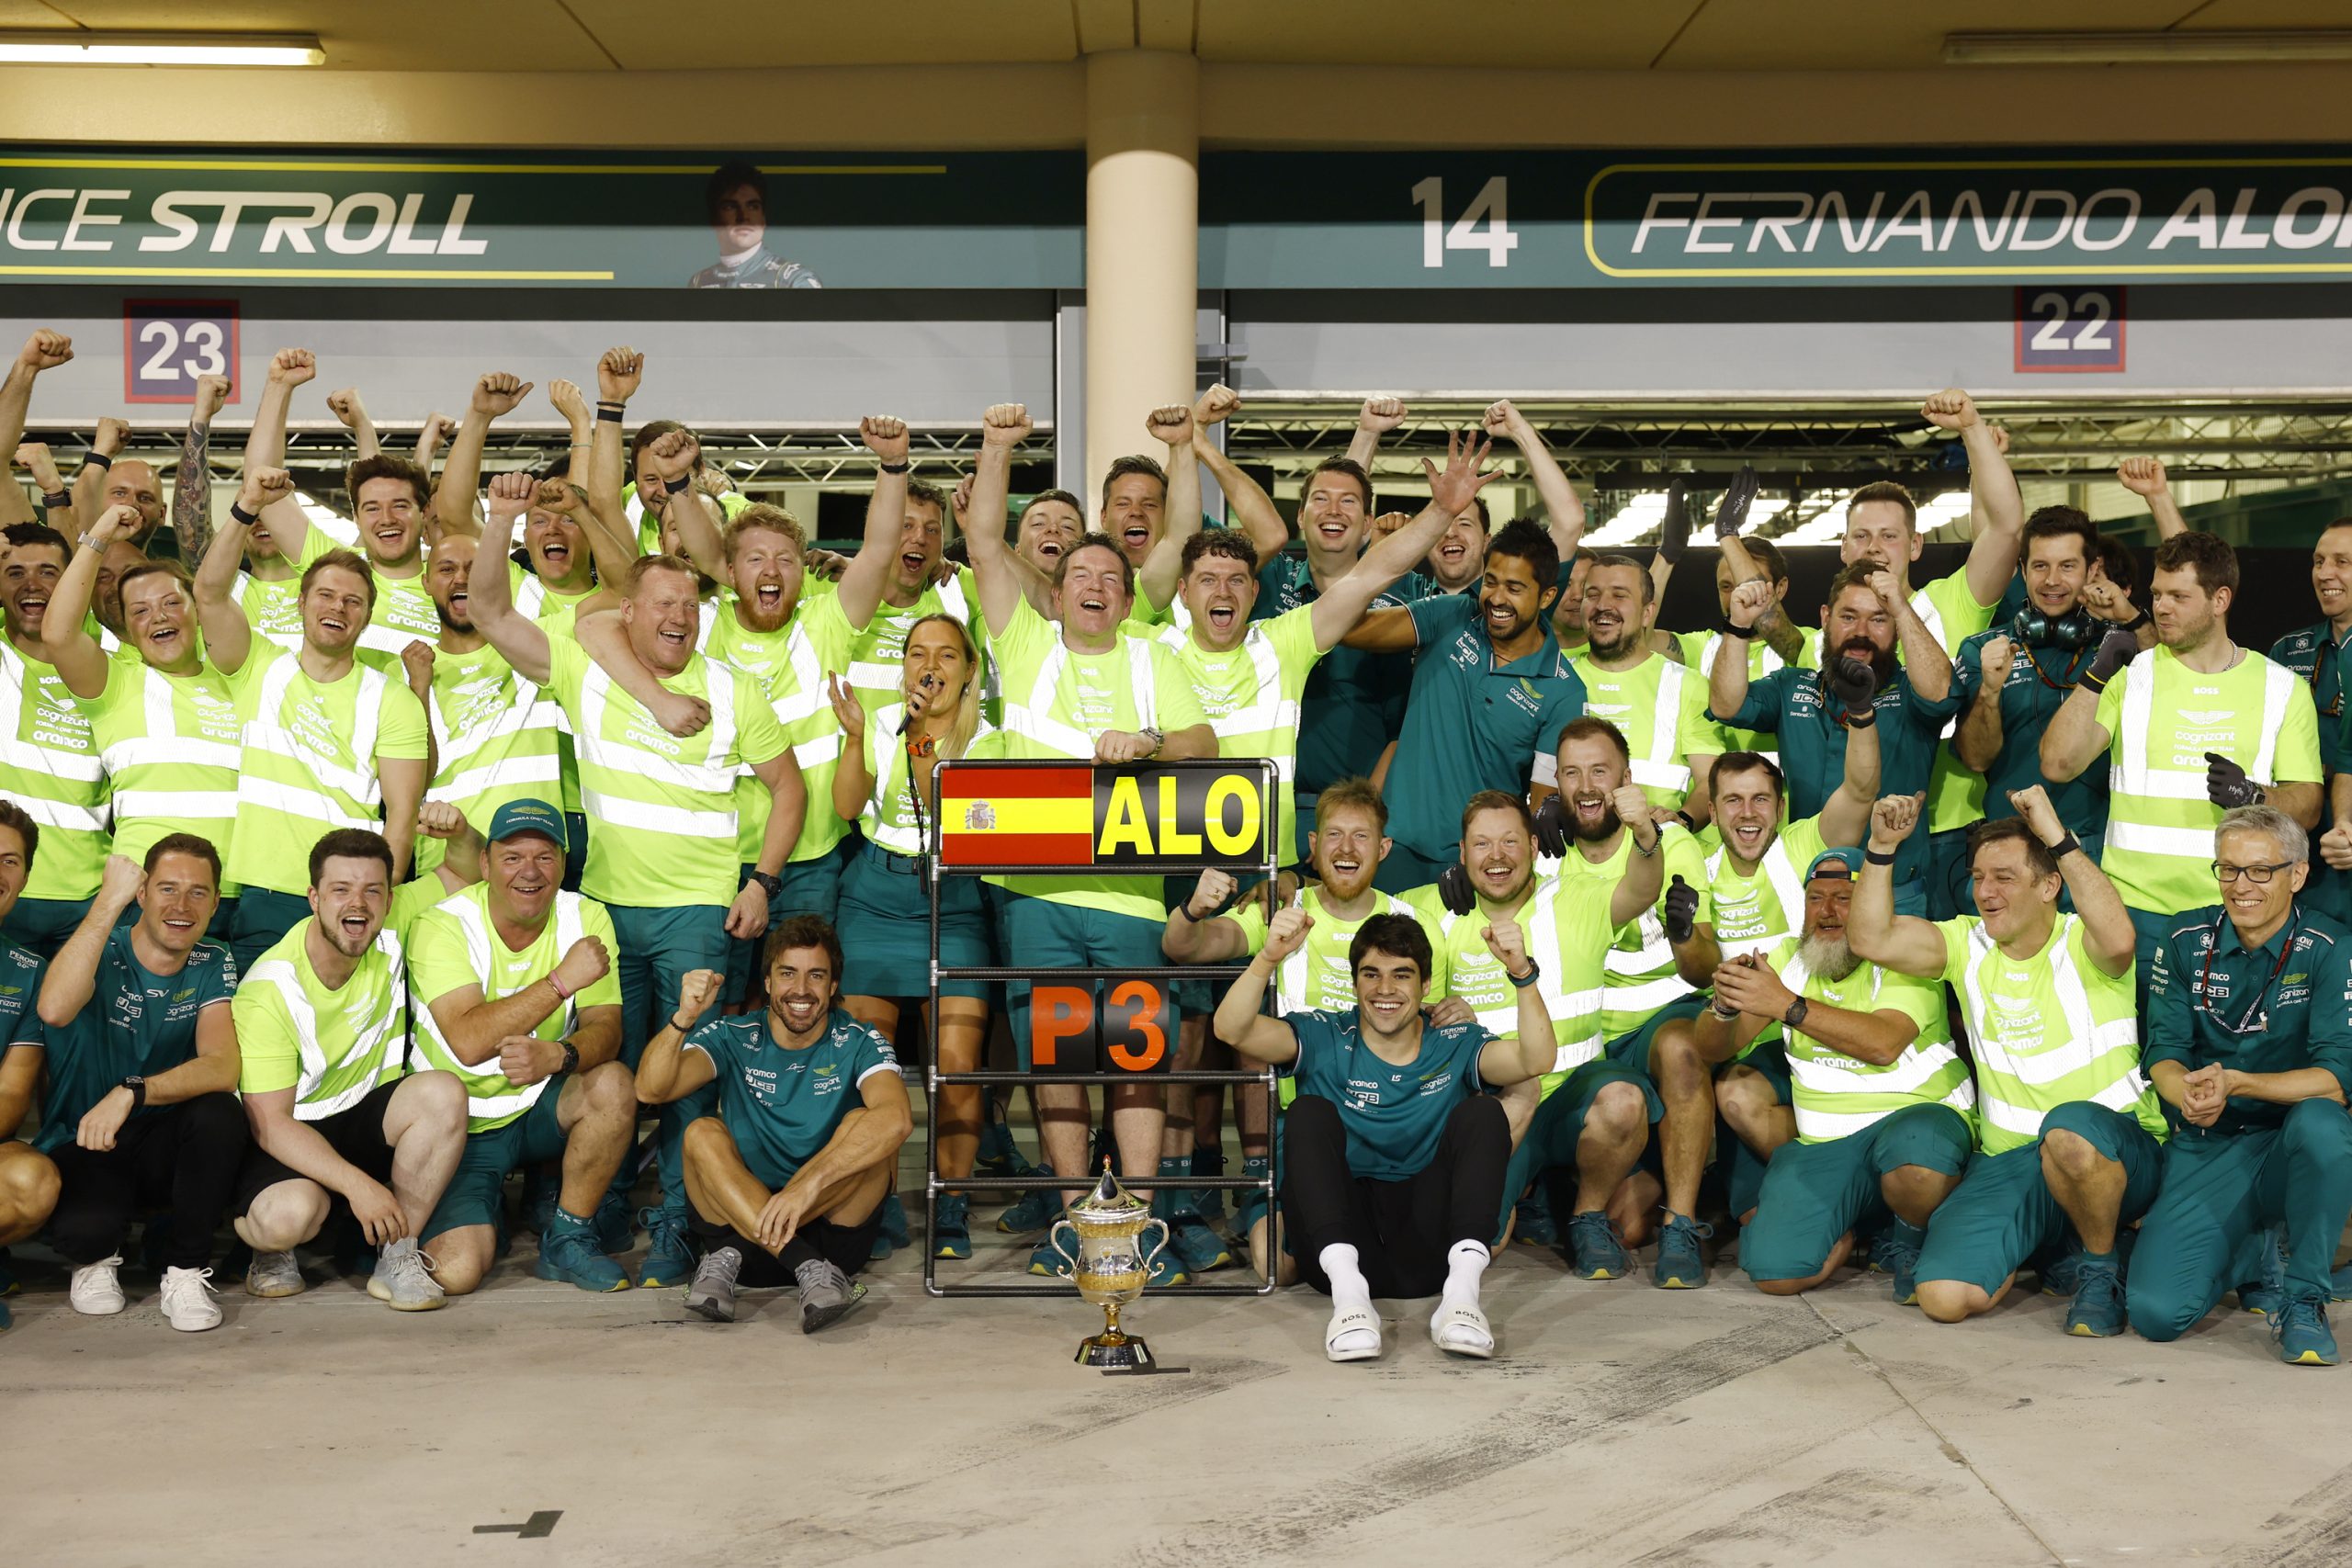 La celebración para los demás de Alonso, el abrazo de Hamilton y un augurio: "La victoria 33 puede llegar"